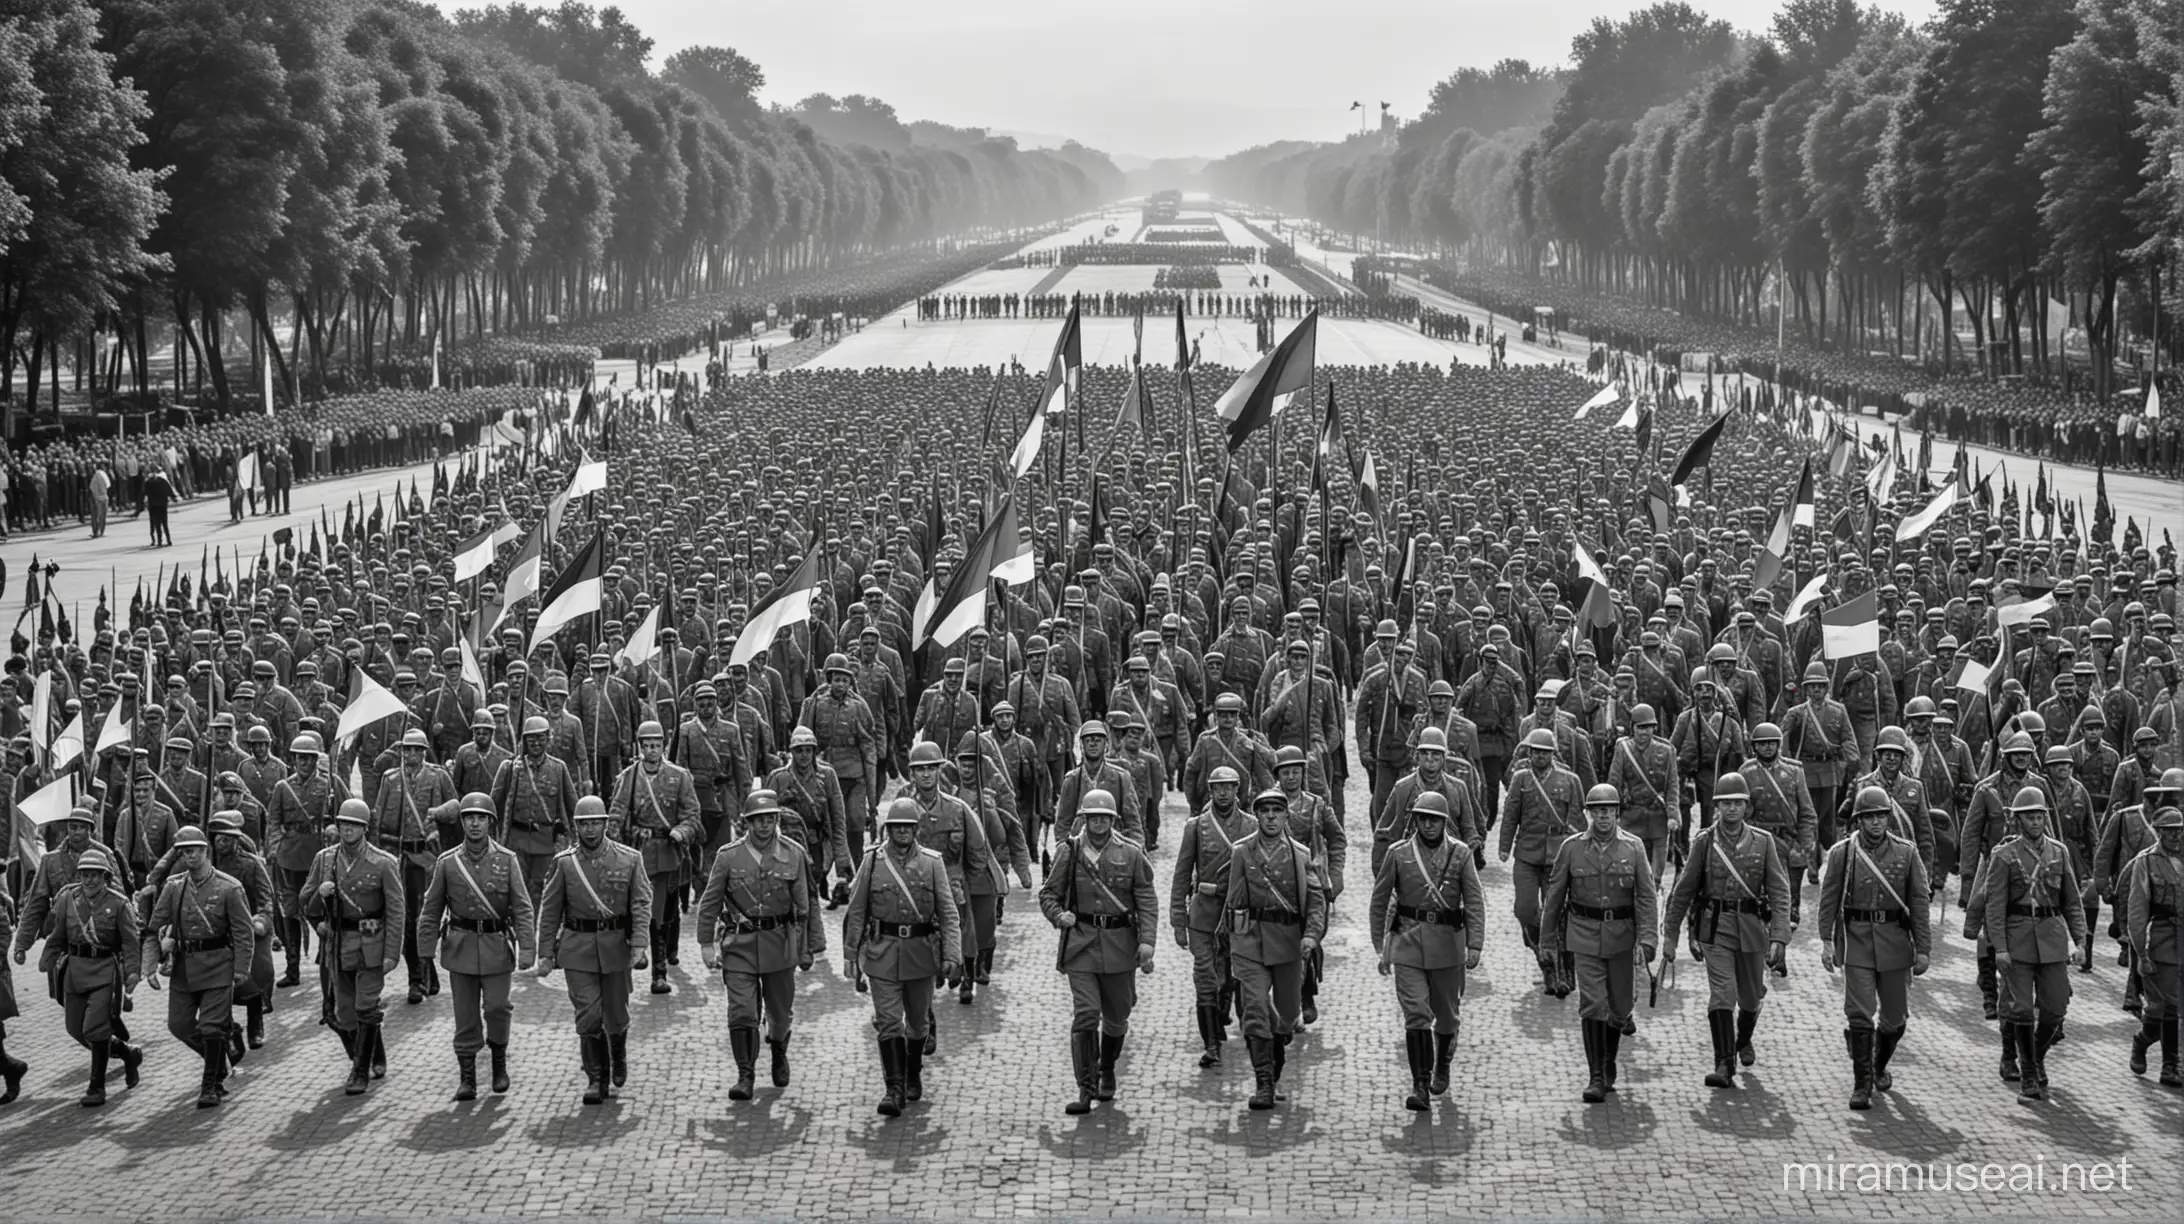 Crie uma praça repleta de pessoas e militares marchando ao lado, com bandeiras da Romênia hasteadas. Imagem em preto e branco.